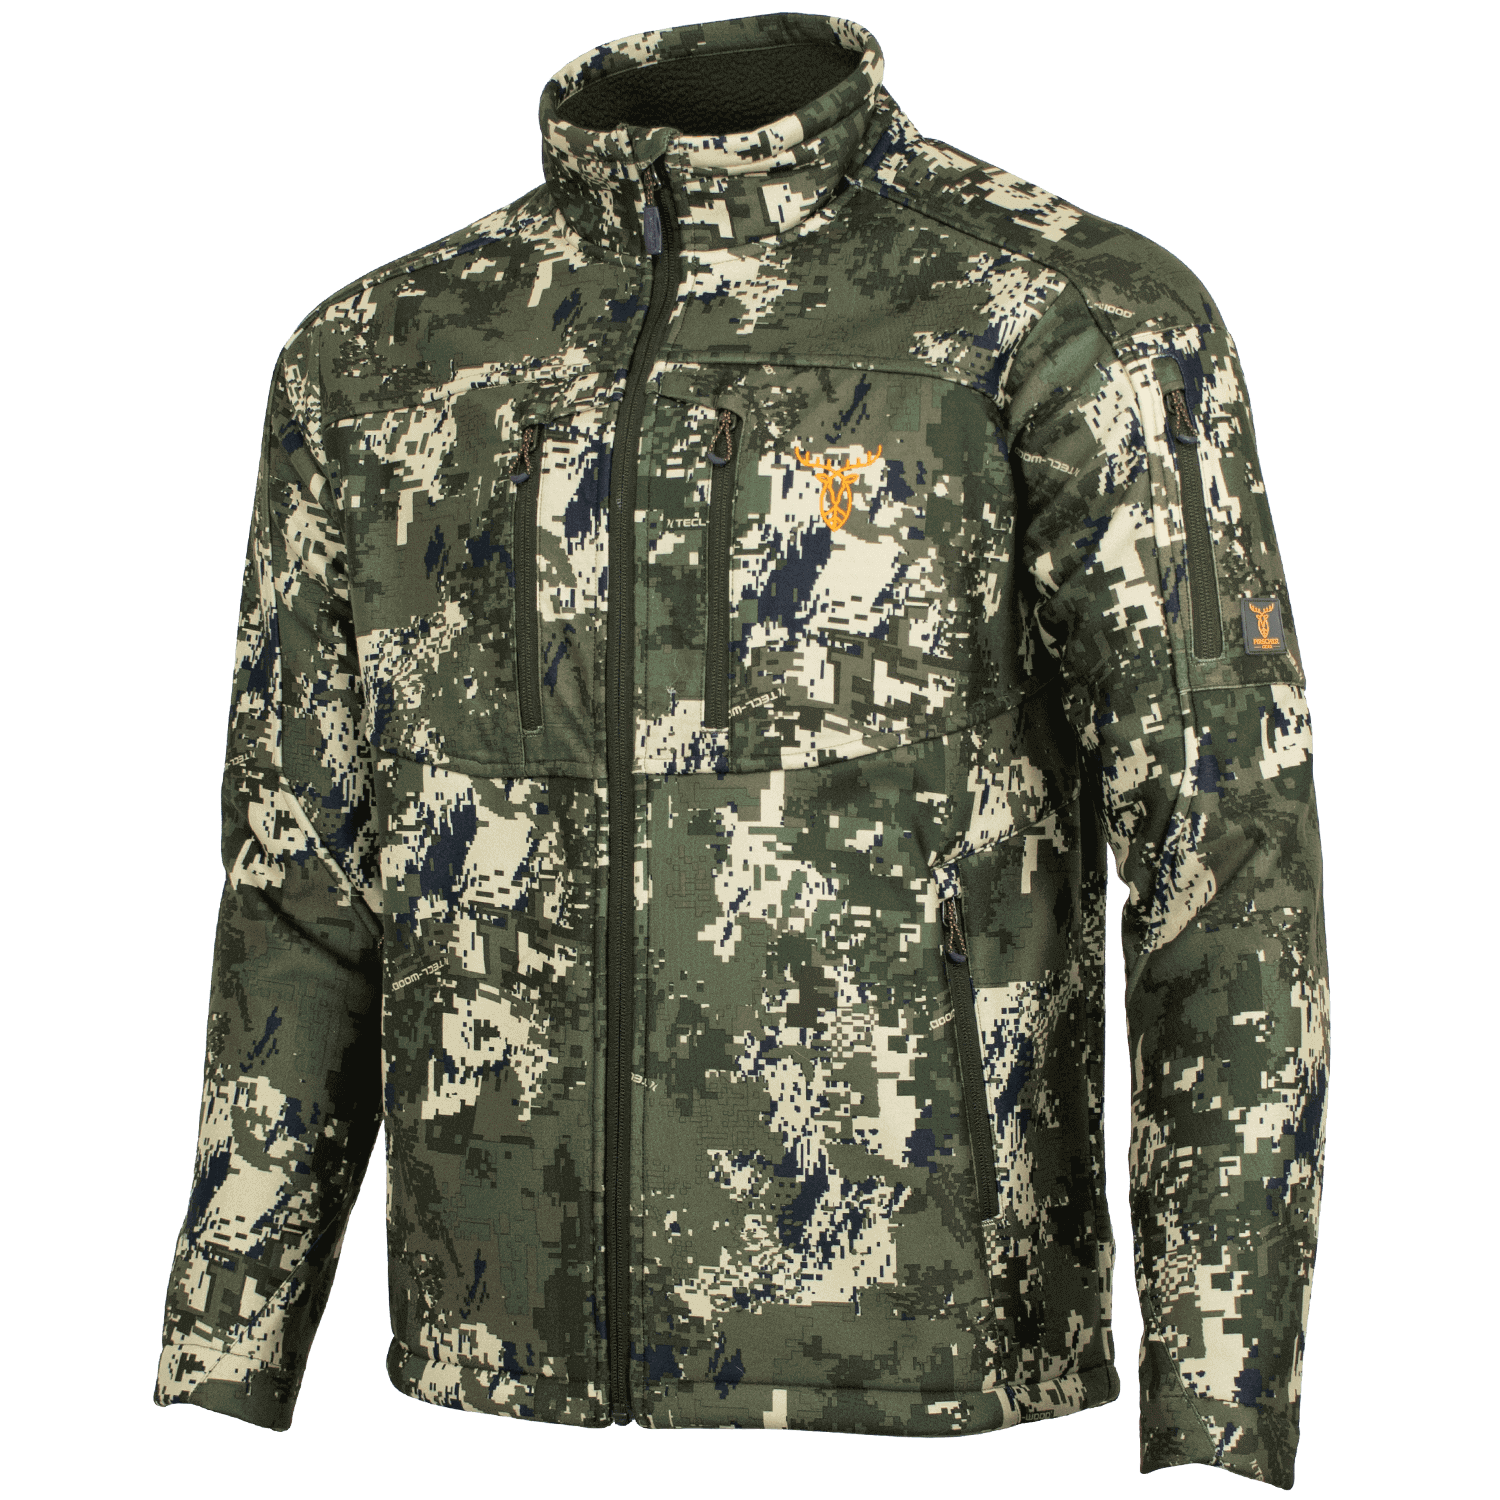 Pirscher Gear Silence Pro Jacket (Optimax) - Camouflage Jackets